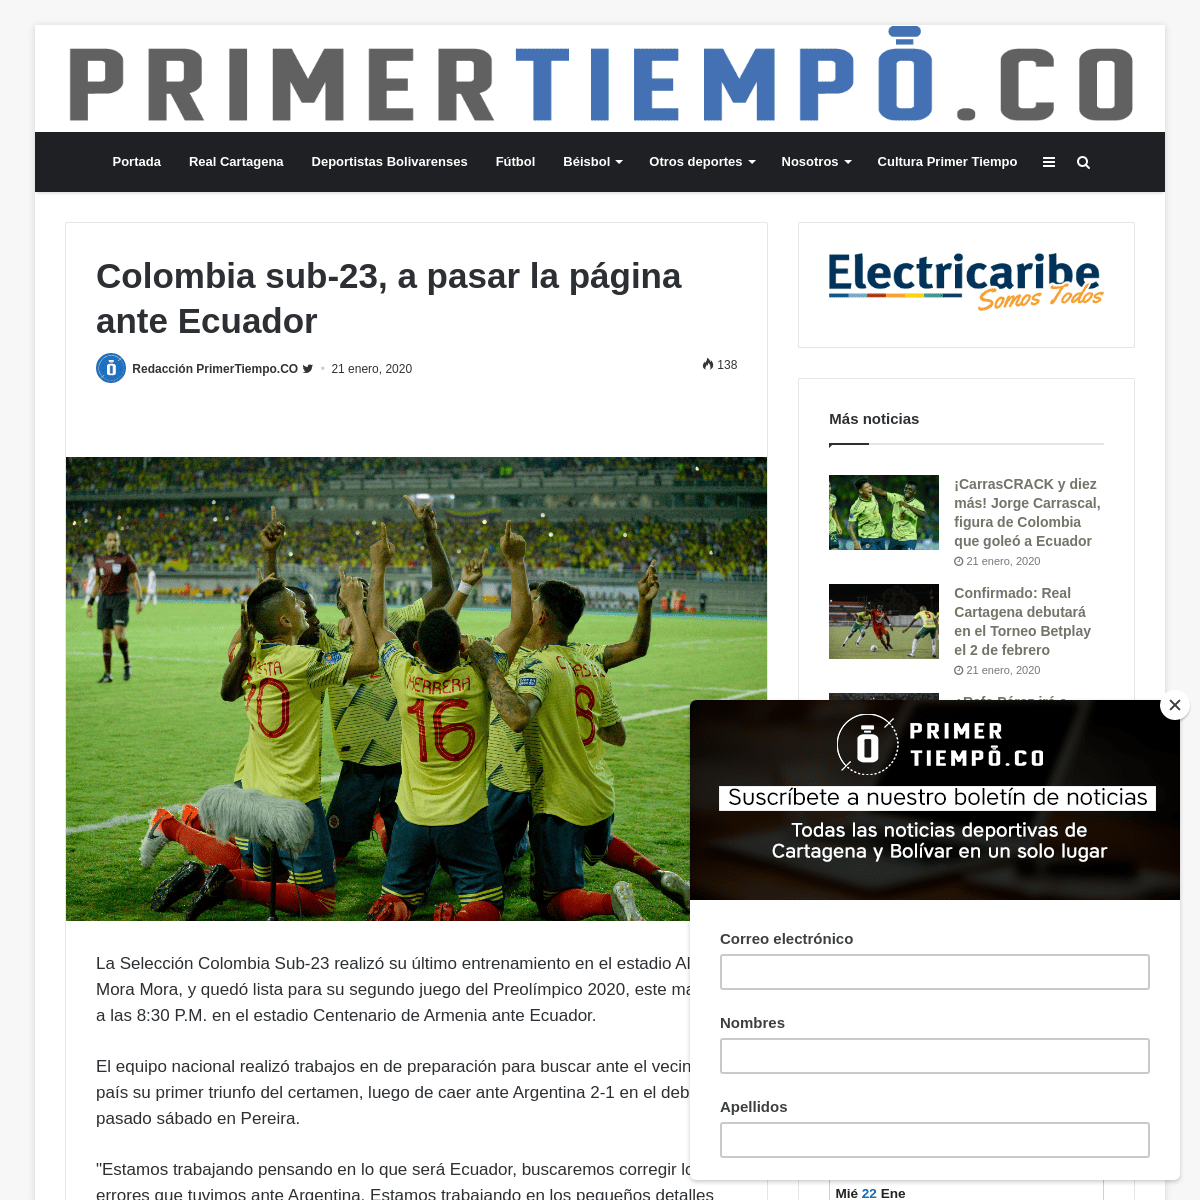 A complete backup of primertiempo.co/seleccion-colombia/colombia-sub-23-a-pasar-la-pagina-ante-ecuador